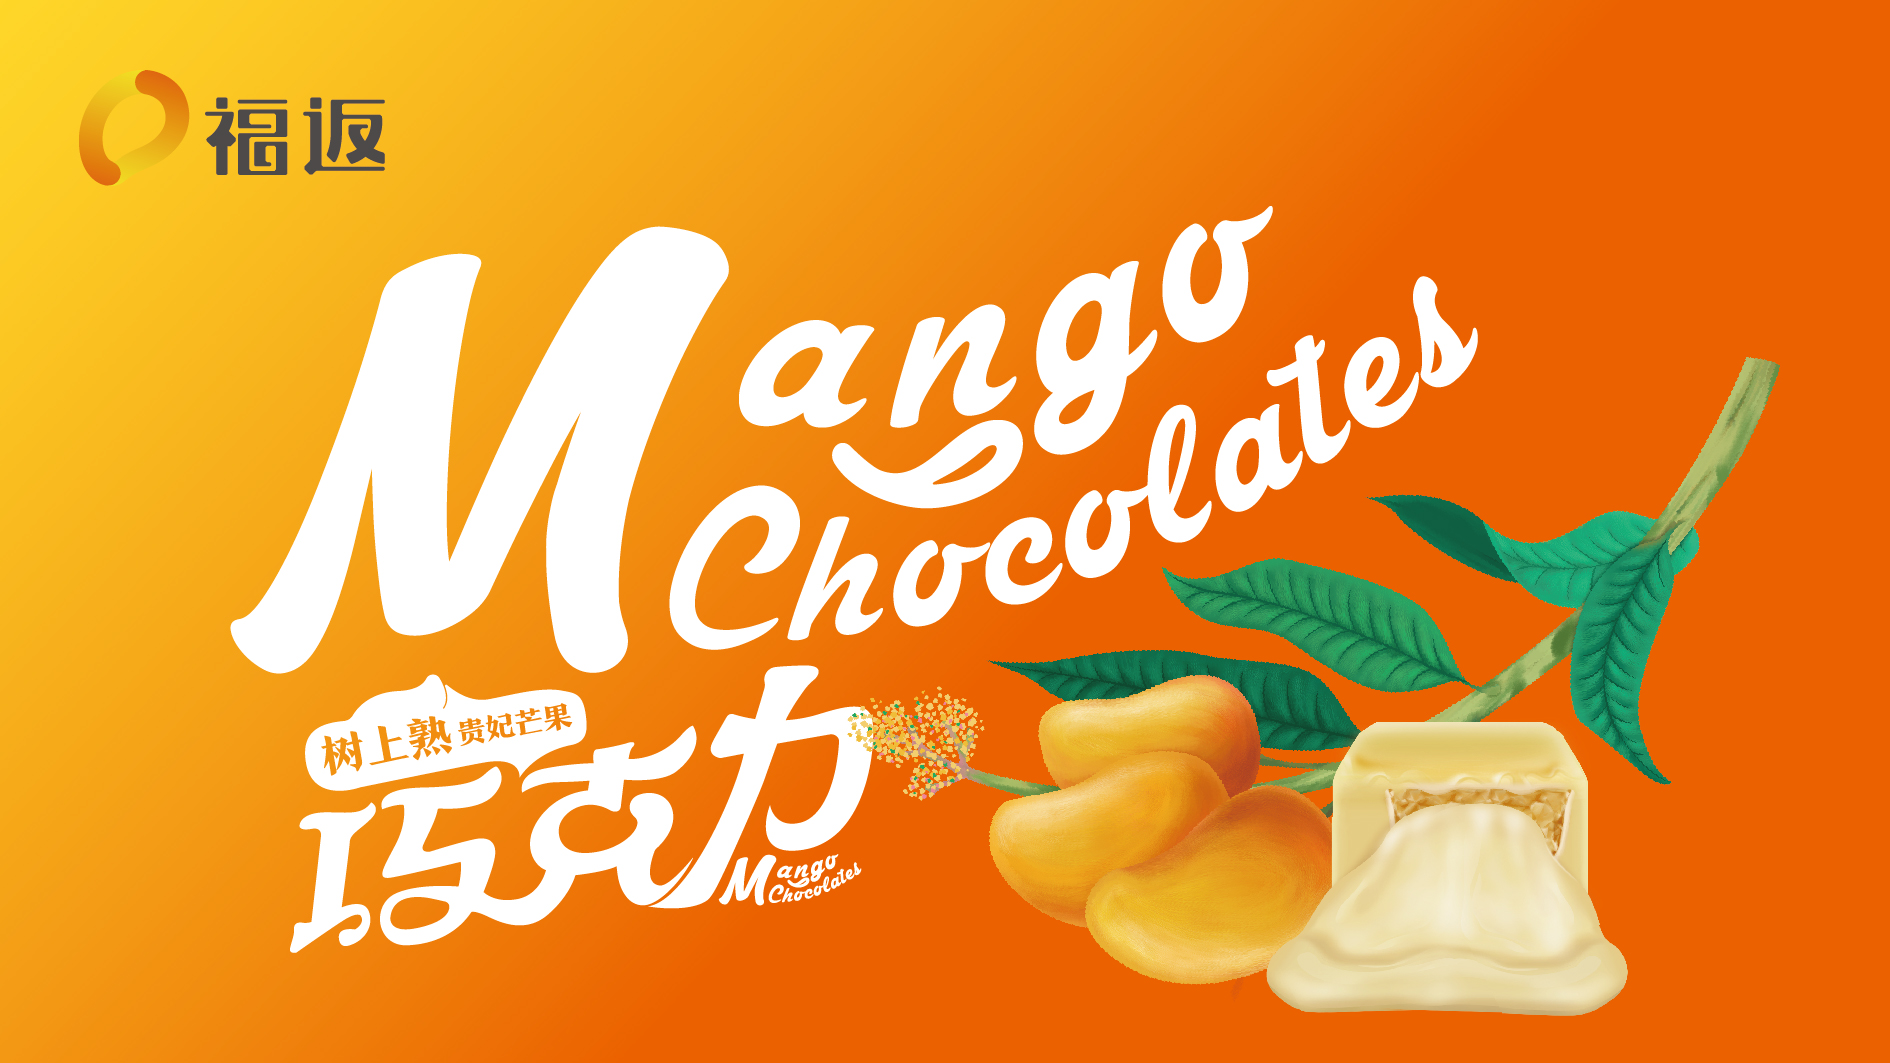 广西福返芒果巧克力品牌形象设计